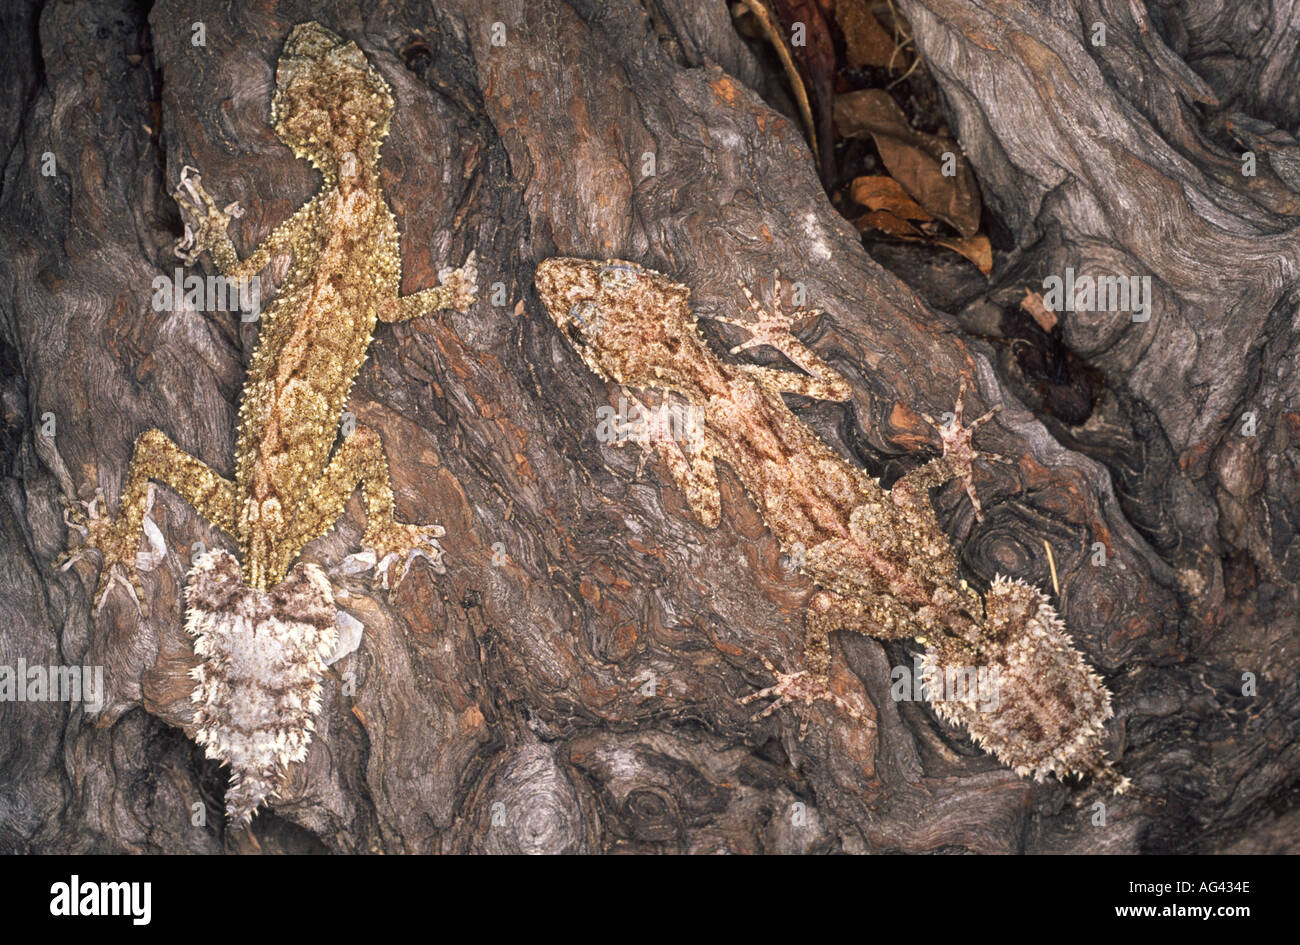 Dos Norte los gecos de cola plana, Saltuarius cornutus camuflado en un árbol. Foto de stock